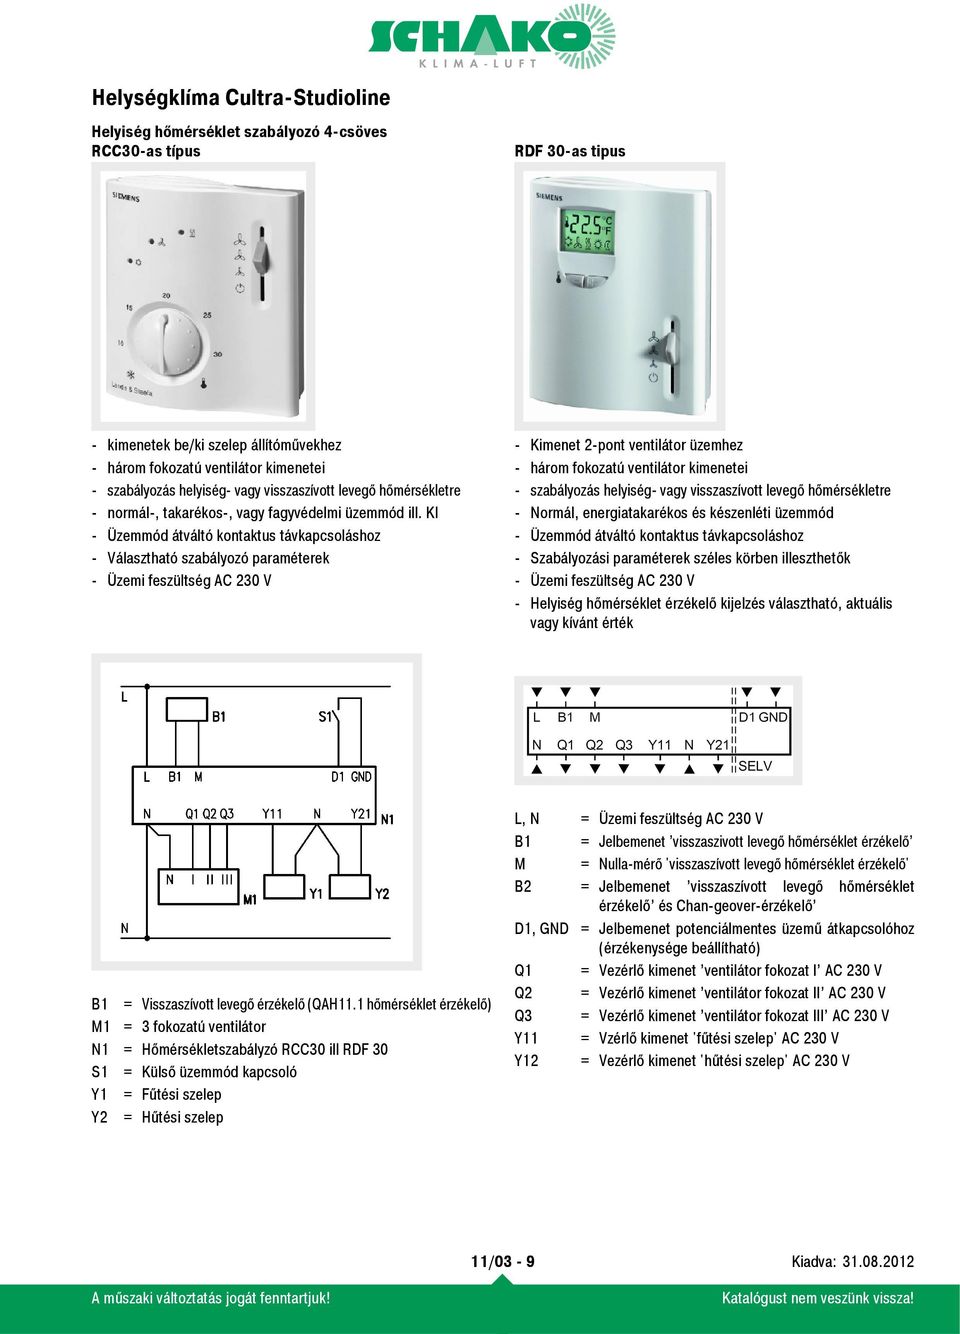 KI - Üzemmód átváltó kontaktus távkapcsoláshoz - Választható szabályozó paraméterek - Üzemi feszültség AC 230 V - Kimenet 2-pont ventilátor üzemhez - három fokozatú ventilátor kimenetei - szabályozás